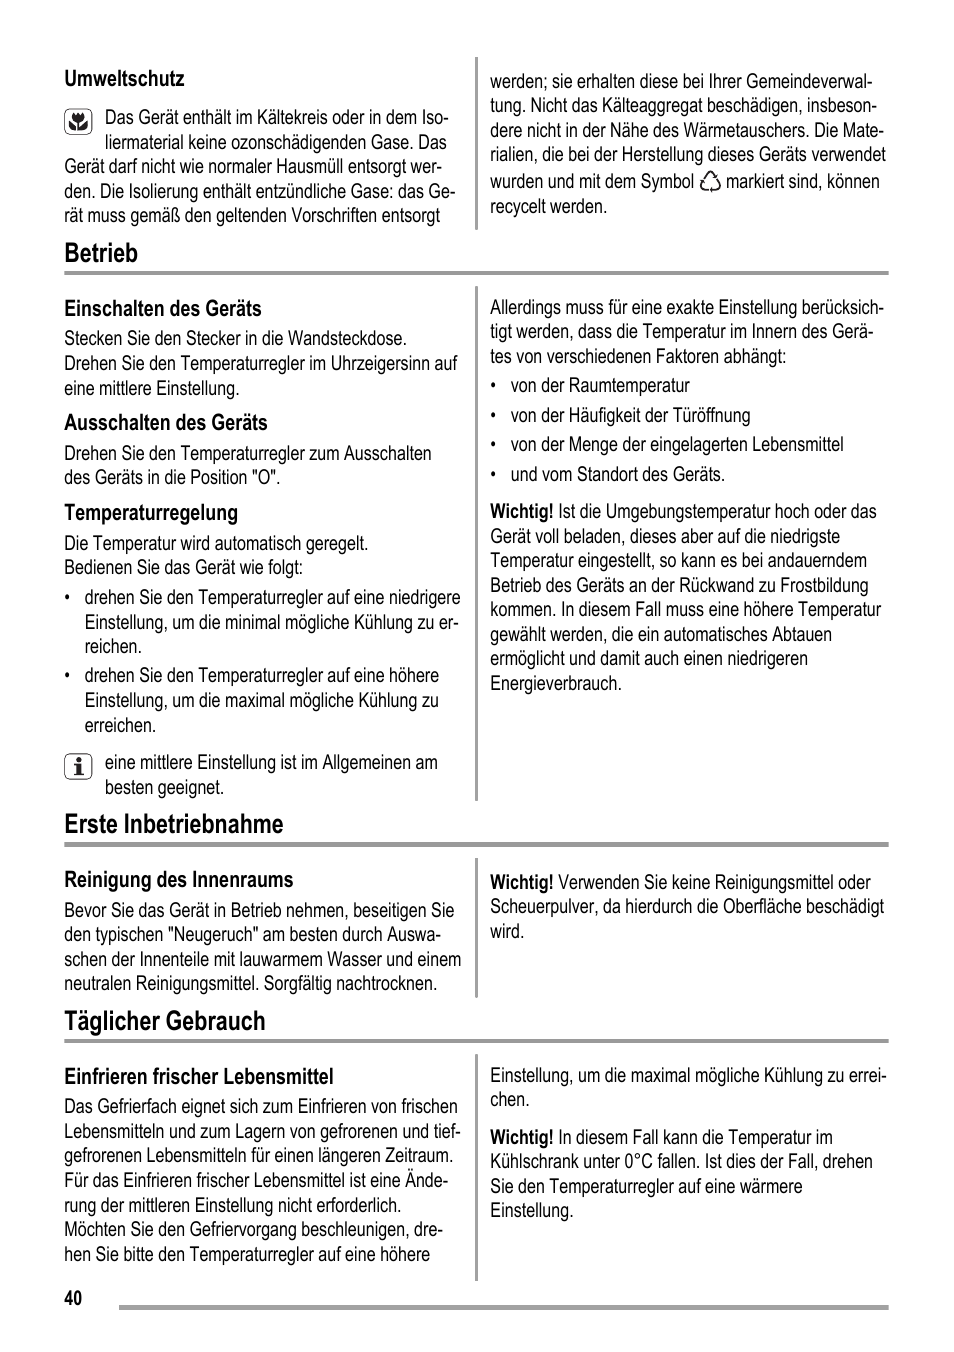 Betrieb, Erste inbetriebnahme, Täglicher gebrauch | ZANKER KBA 17401 SK User Manual | Page 40 / 52